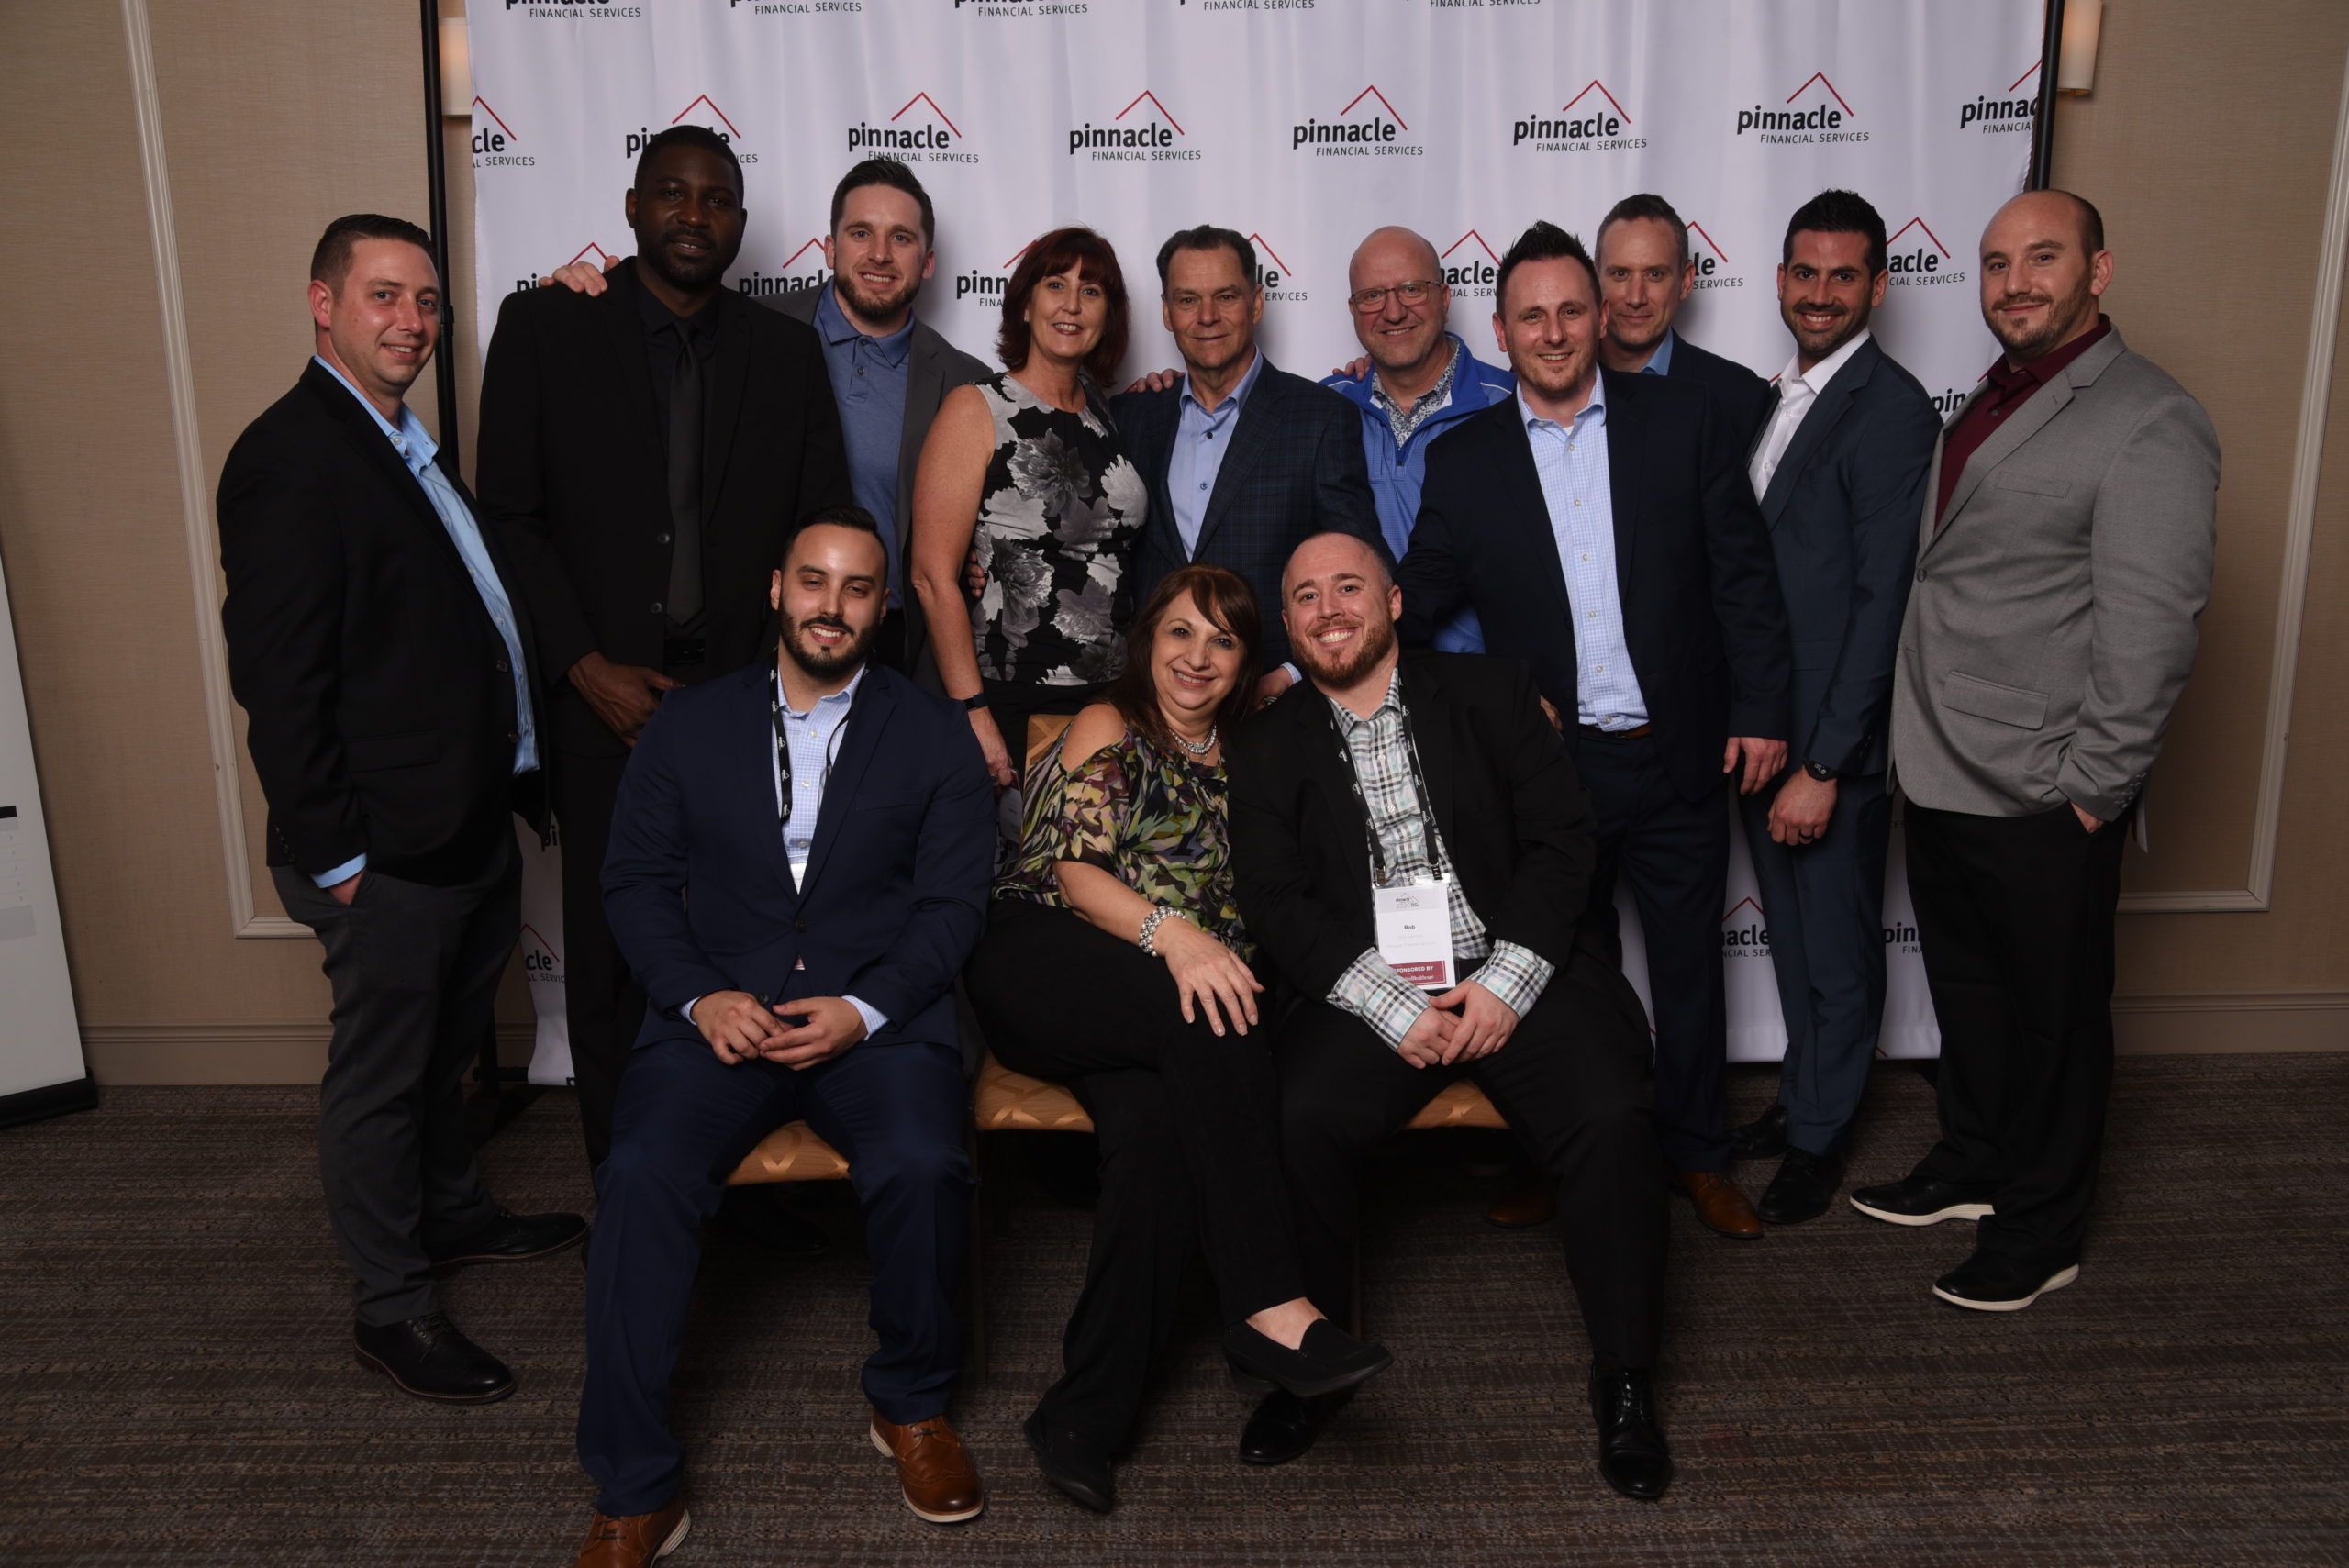 Pinnacle Team at the 2021 Sales Summit.